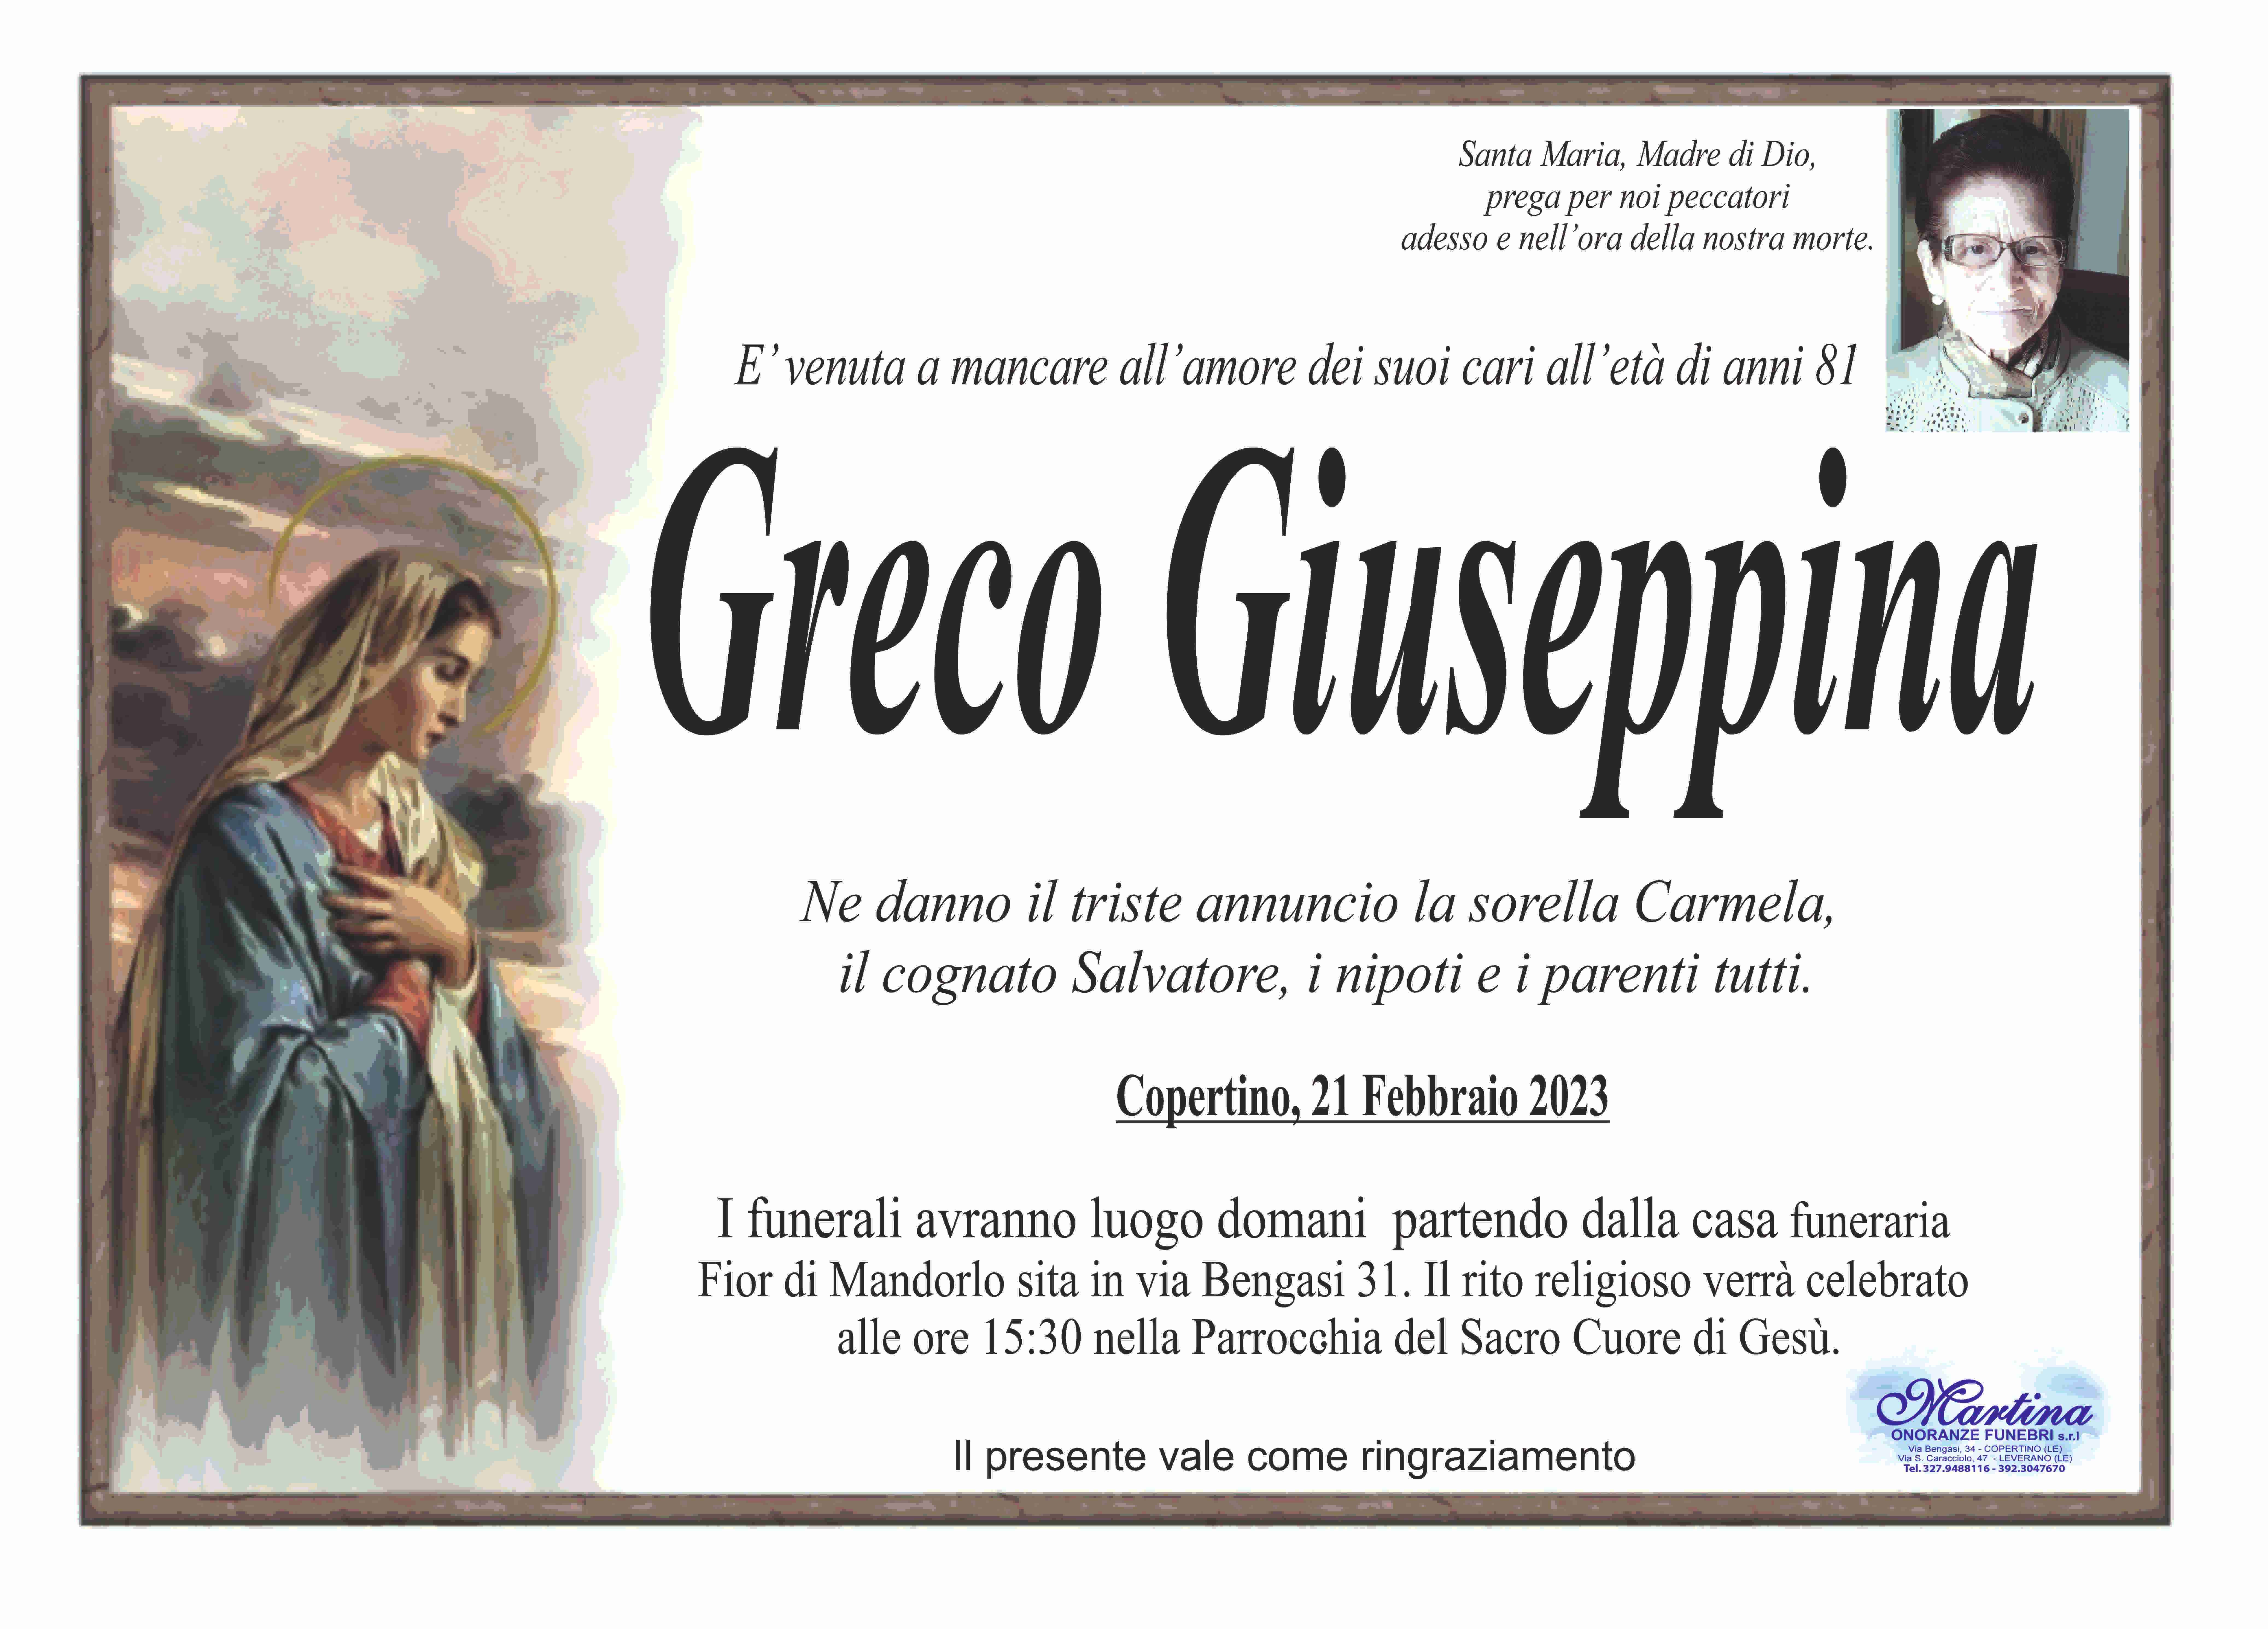 Giuseppina Greco